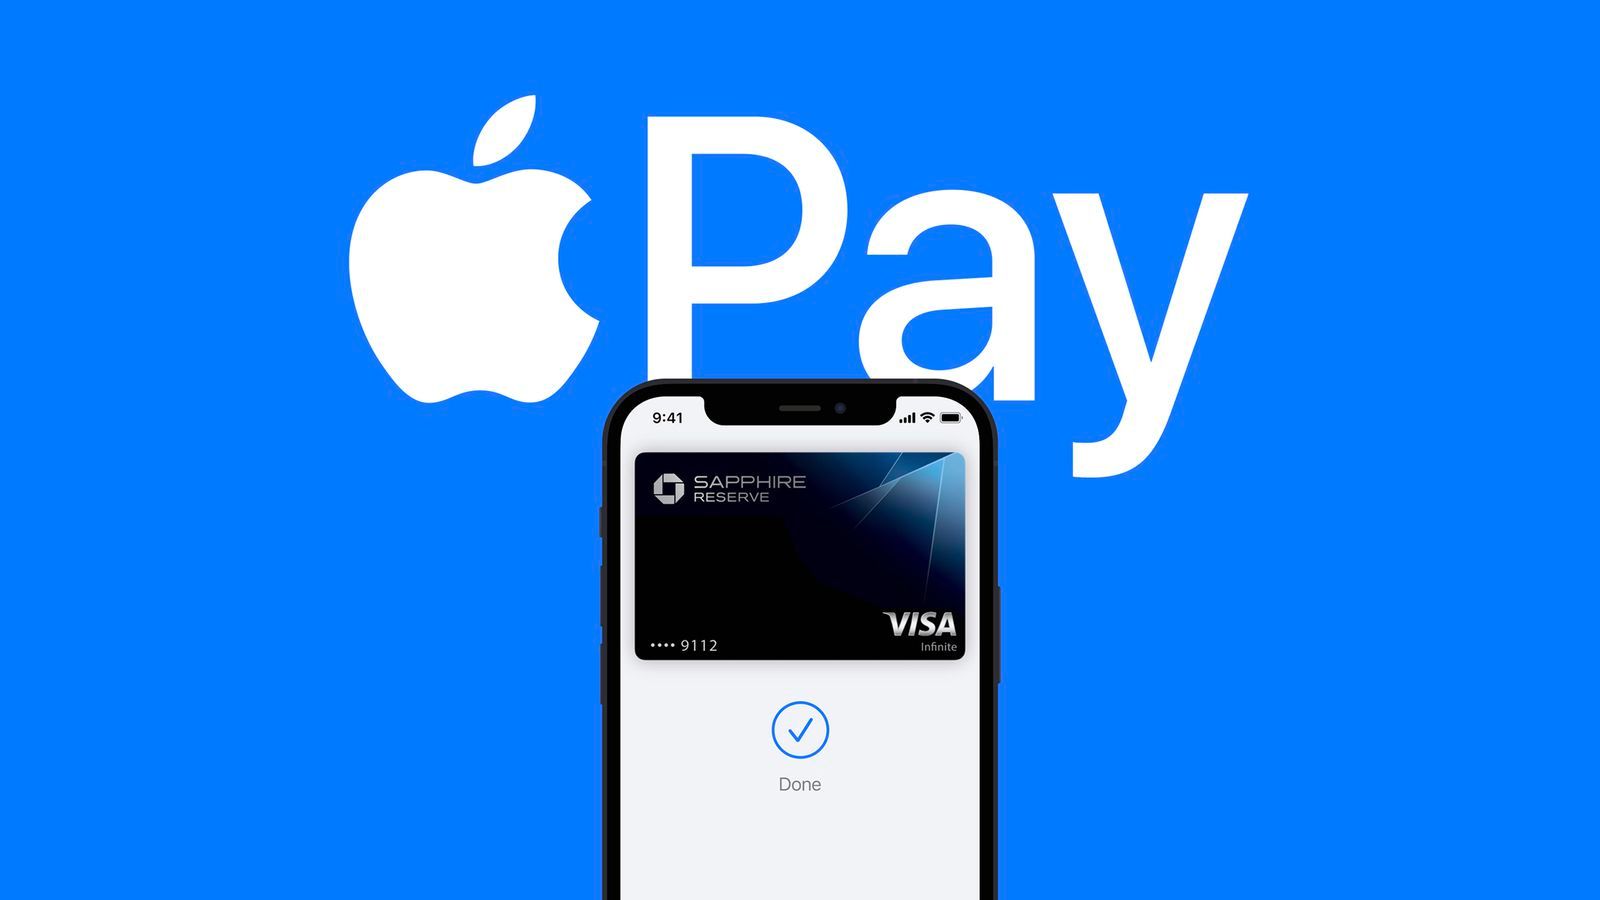 ЕС официально возражает против ограничений доступа третьих сторон к функциям NFC в Apple Pay